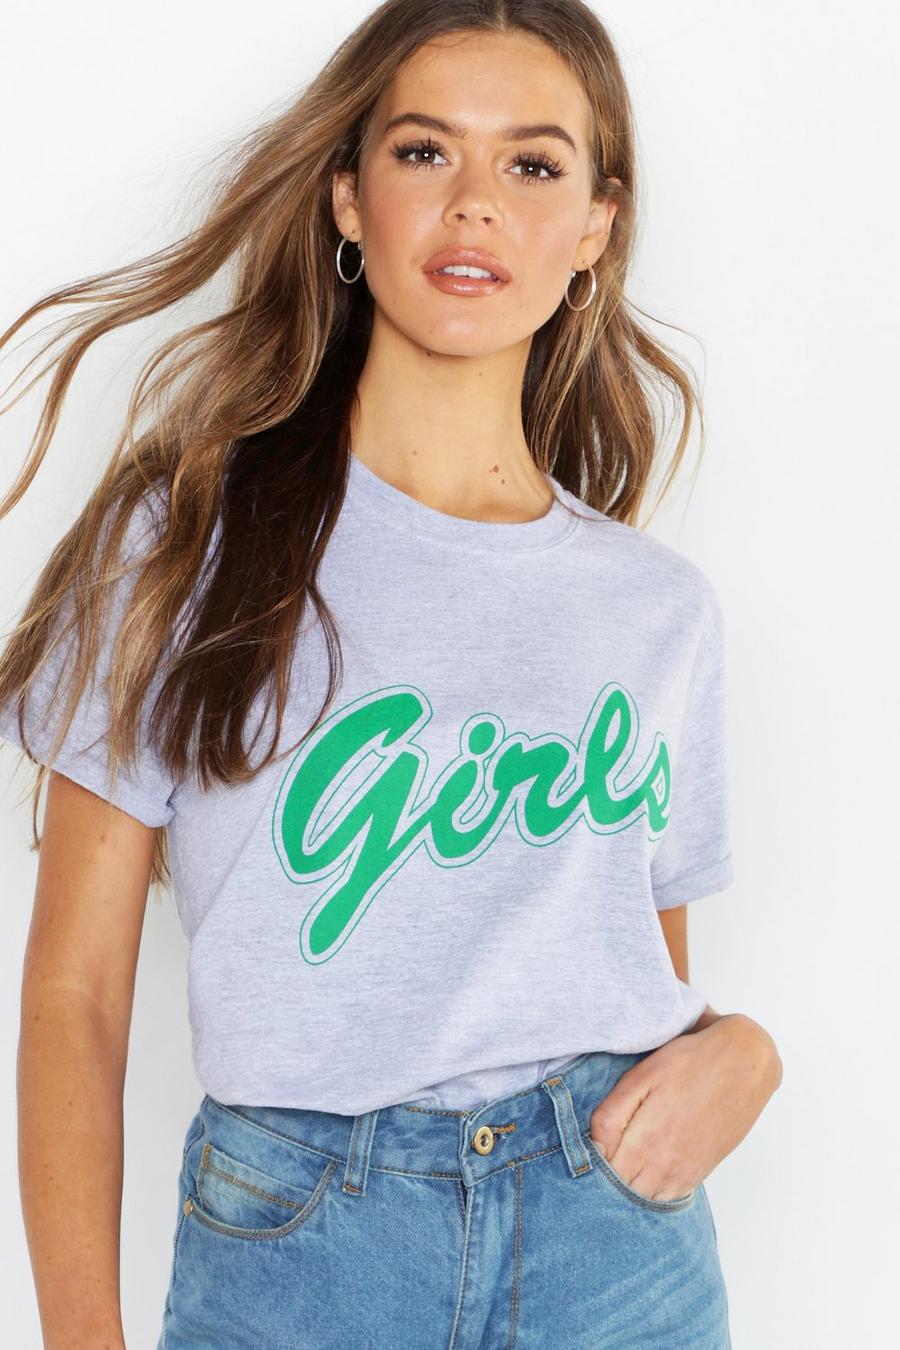 Camiseta con eslogan “Girls” image number 1